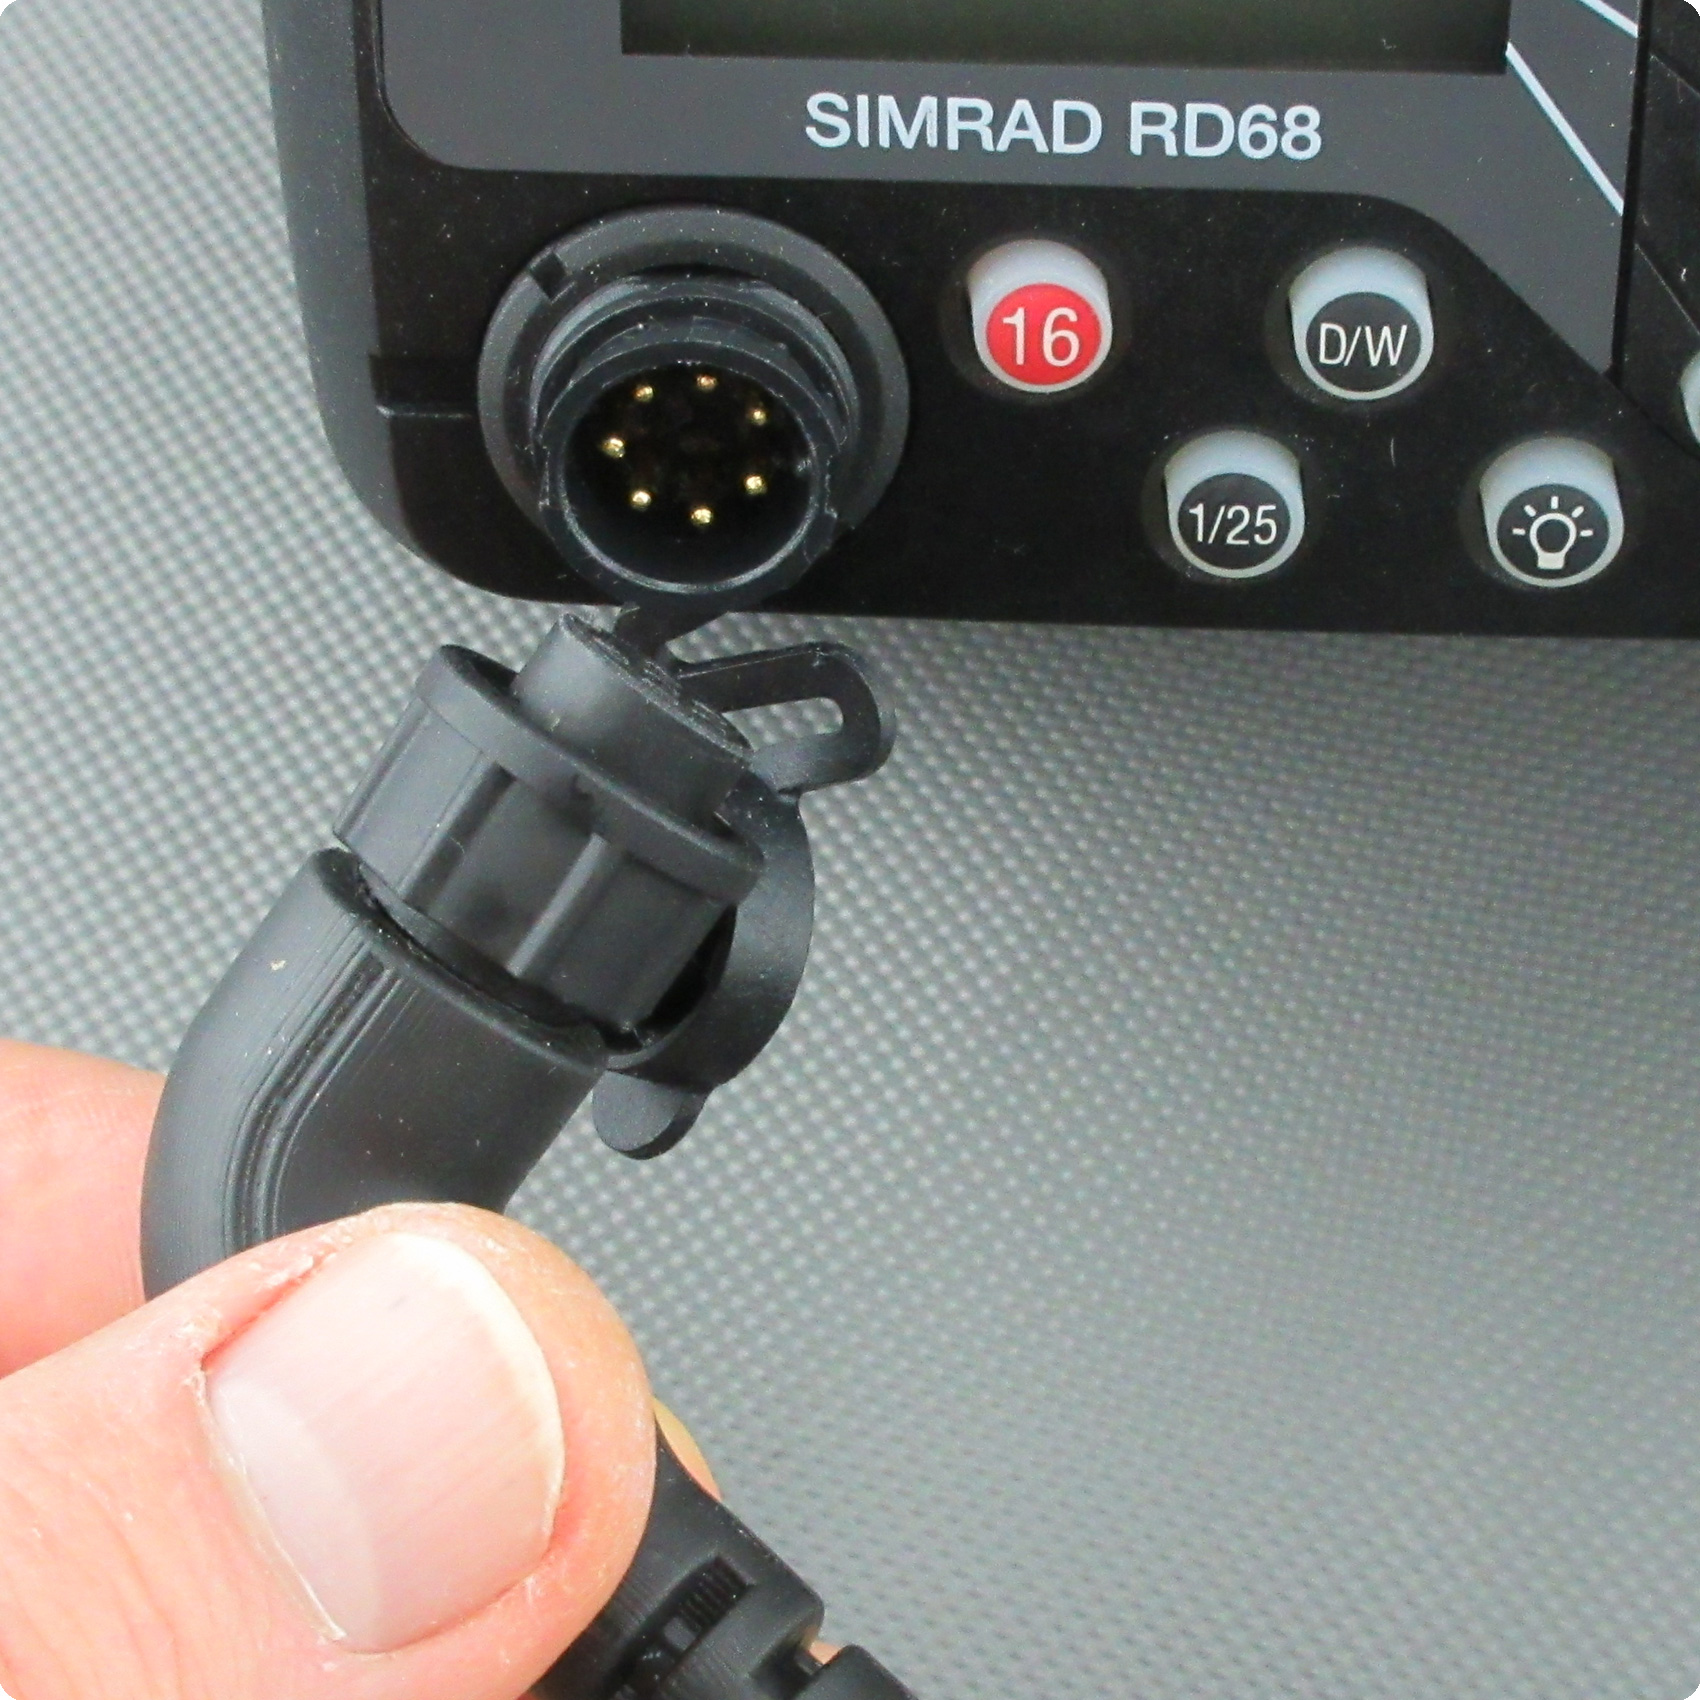 Cable en espiral compatible con Simrad® / Shipmate® RD68, RT1200, RT1400 para micrófonos de mano FTM5